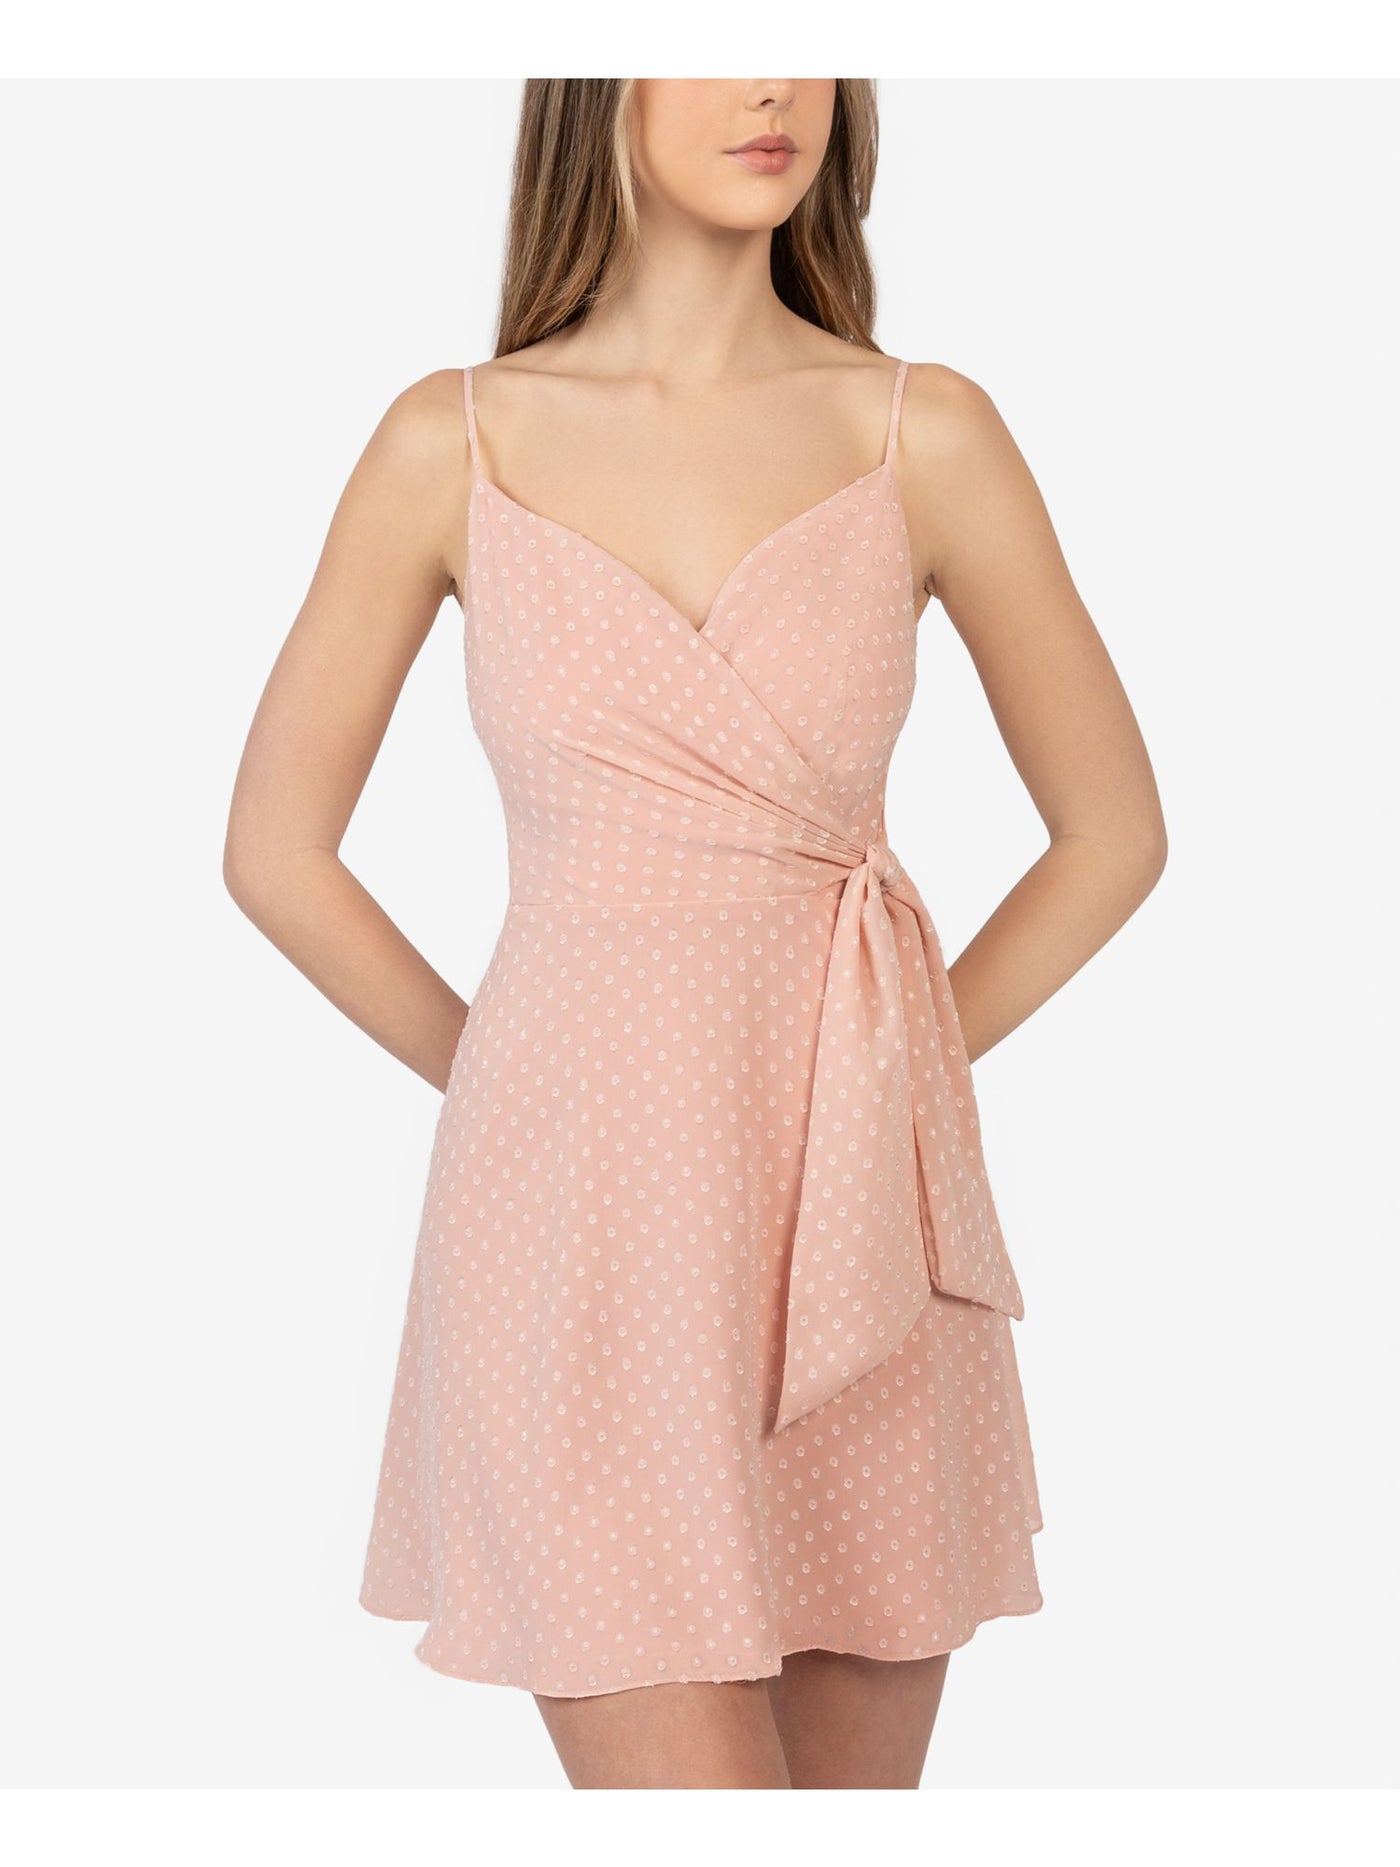 B DARLIN Womens Pink Polka Dot Spaghetti Strap Surplice Neckline Mini Evening Fit + Flare Dress Juniors 15\16